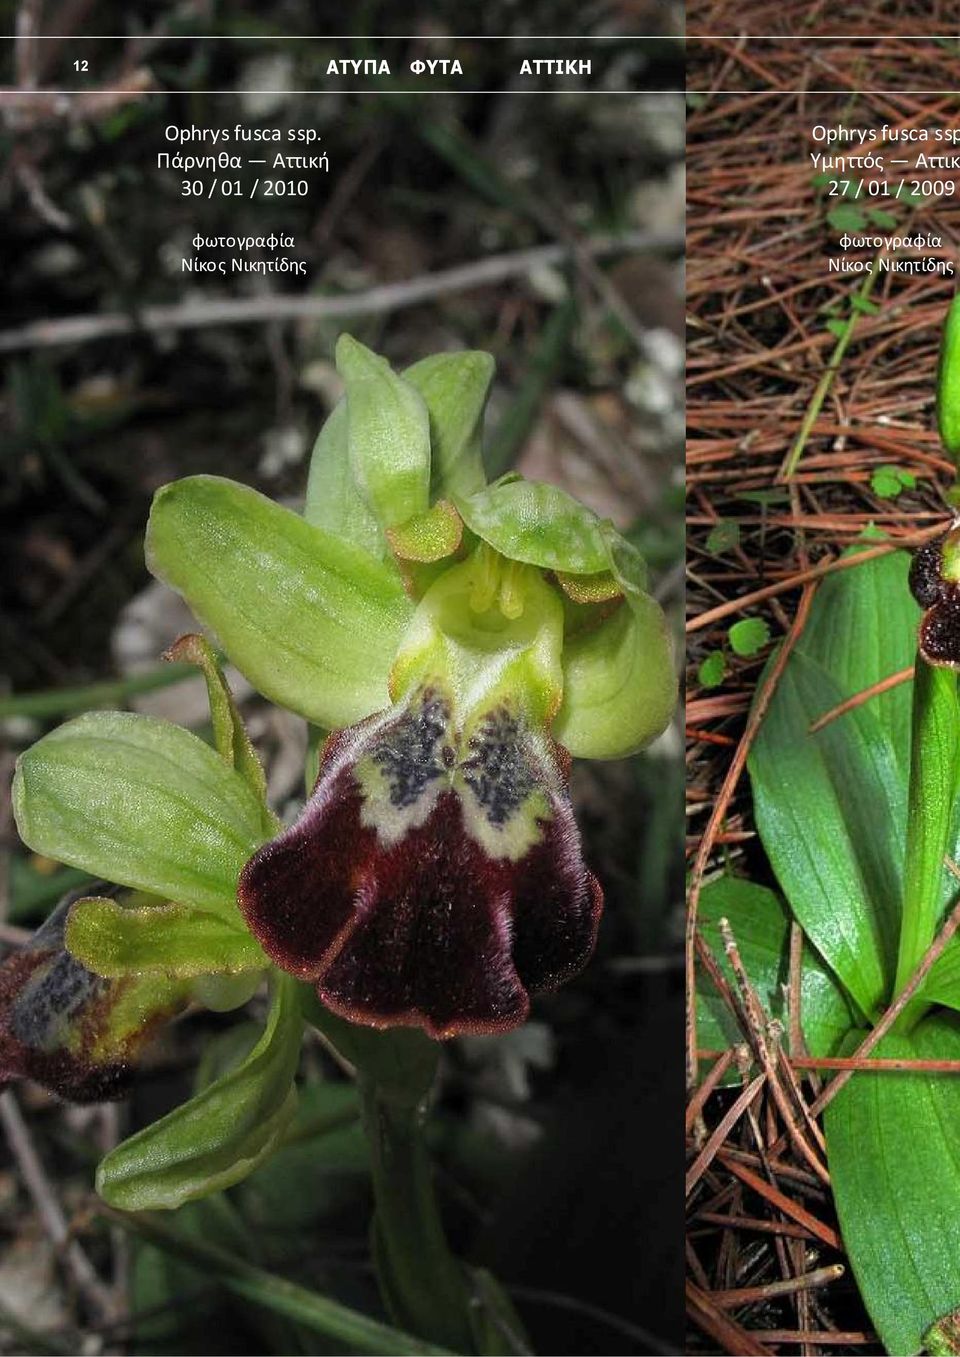 Νίκος Νικητίδης Ophrys fusca ssp Υμηττός